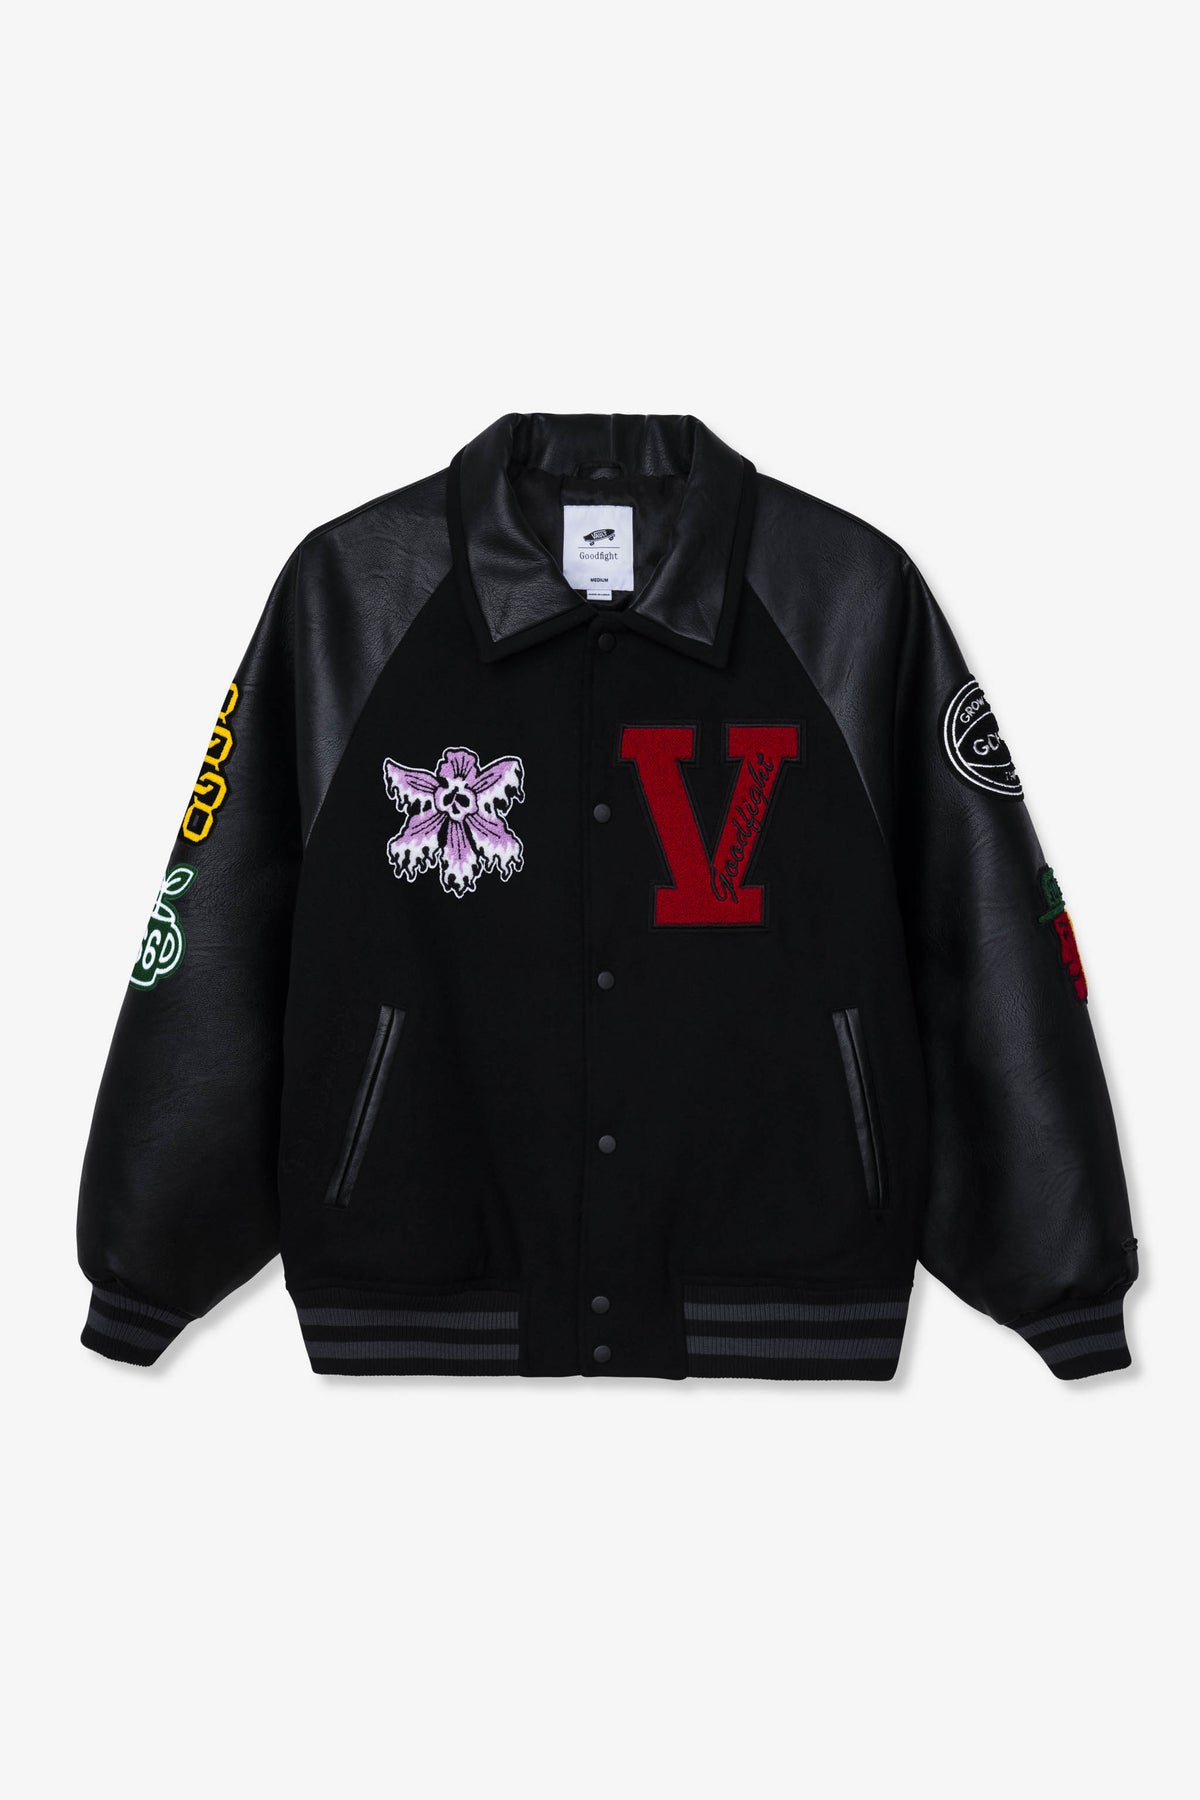 Jackets & Coats  Custom Lv Varsity Jacket Size Medium And Large 1